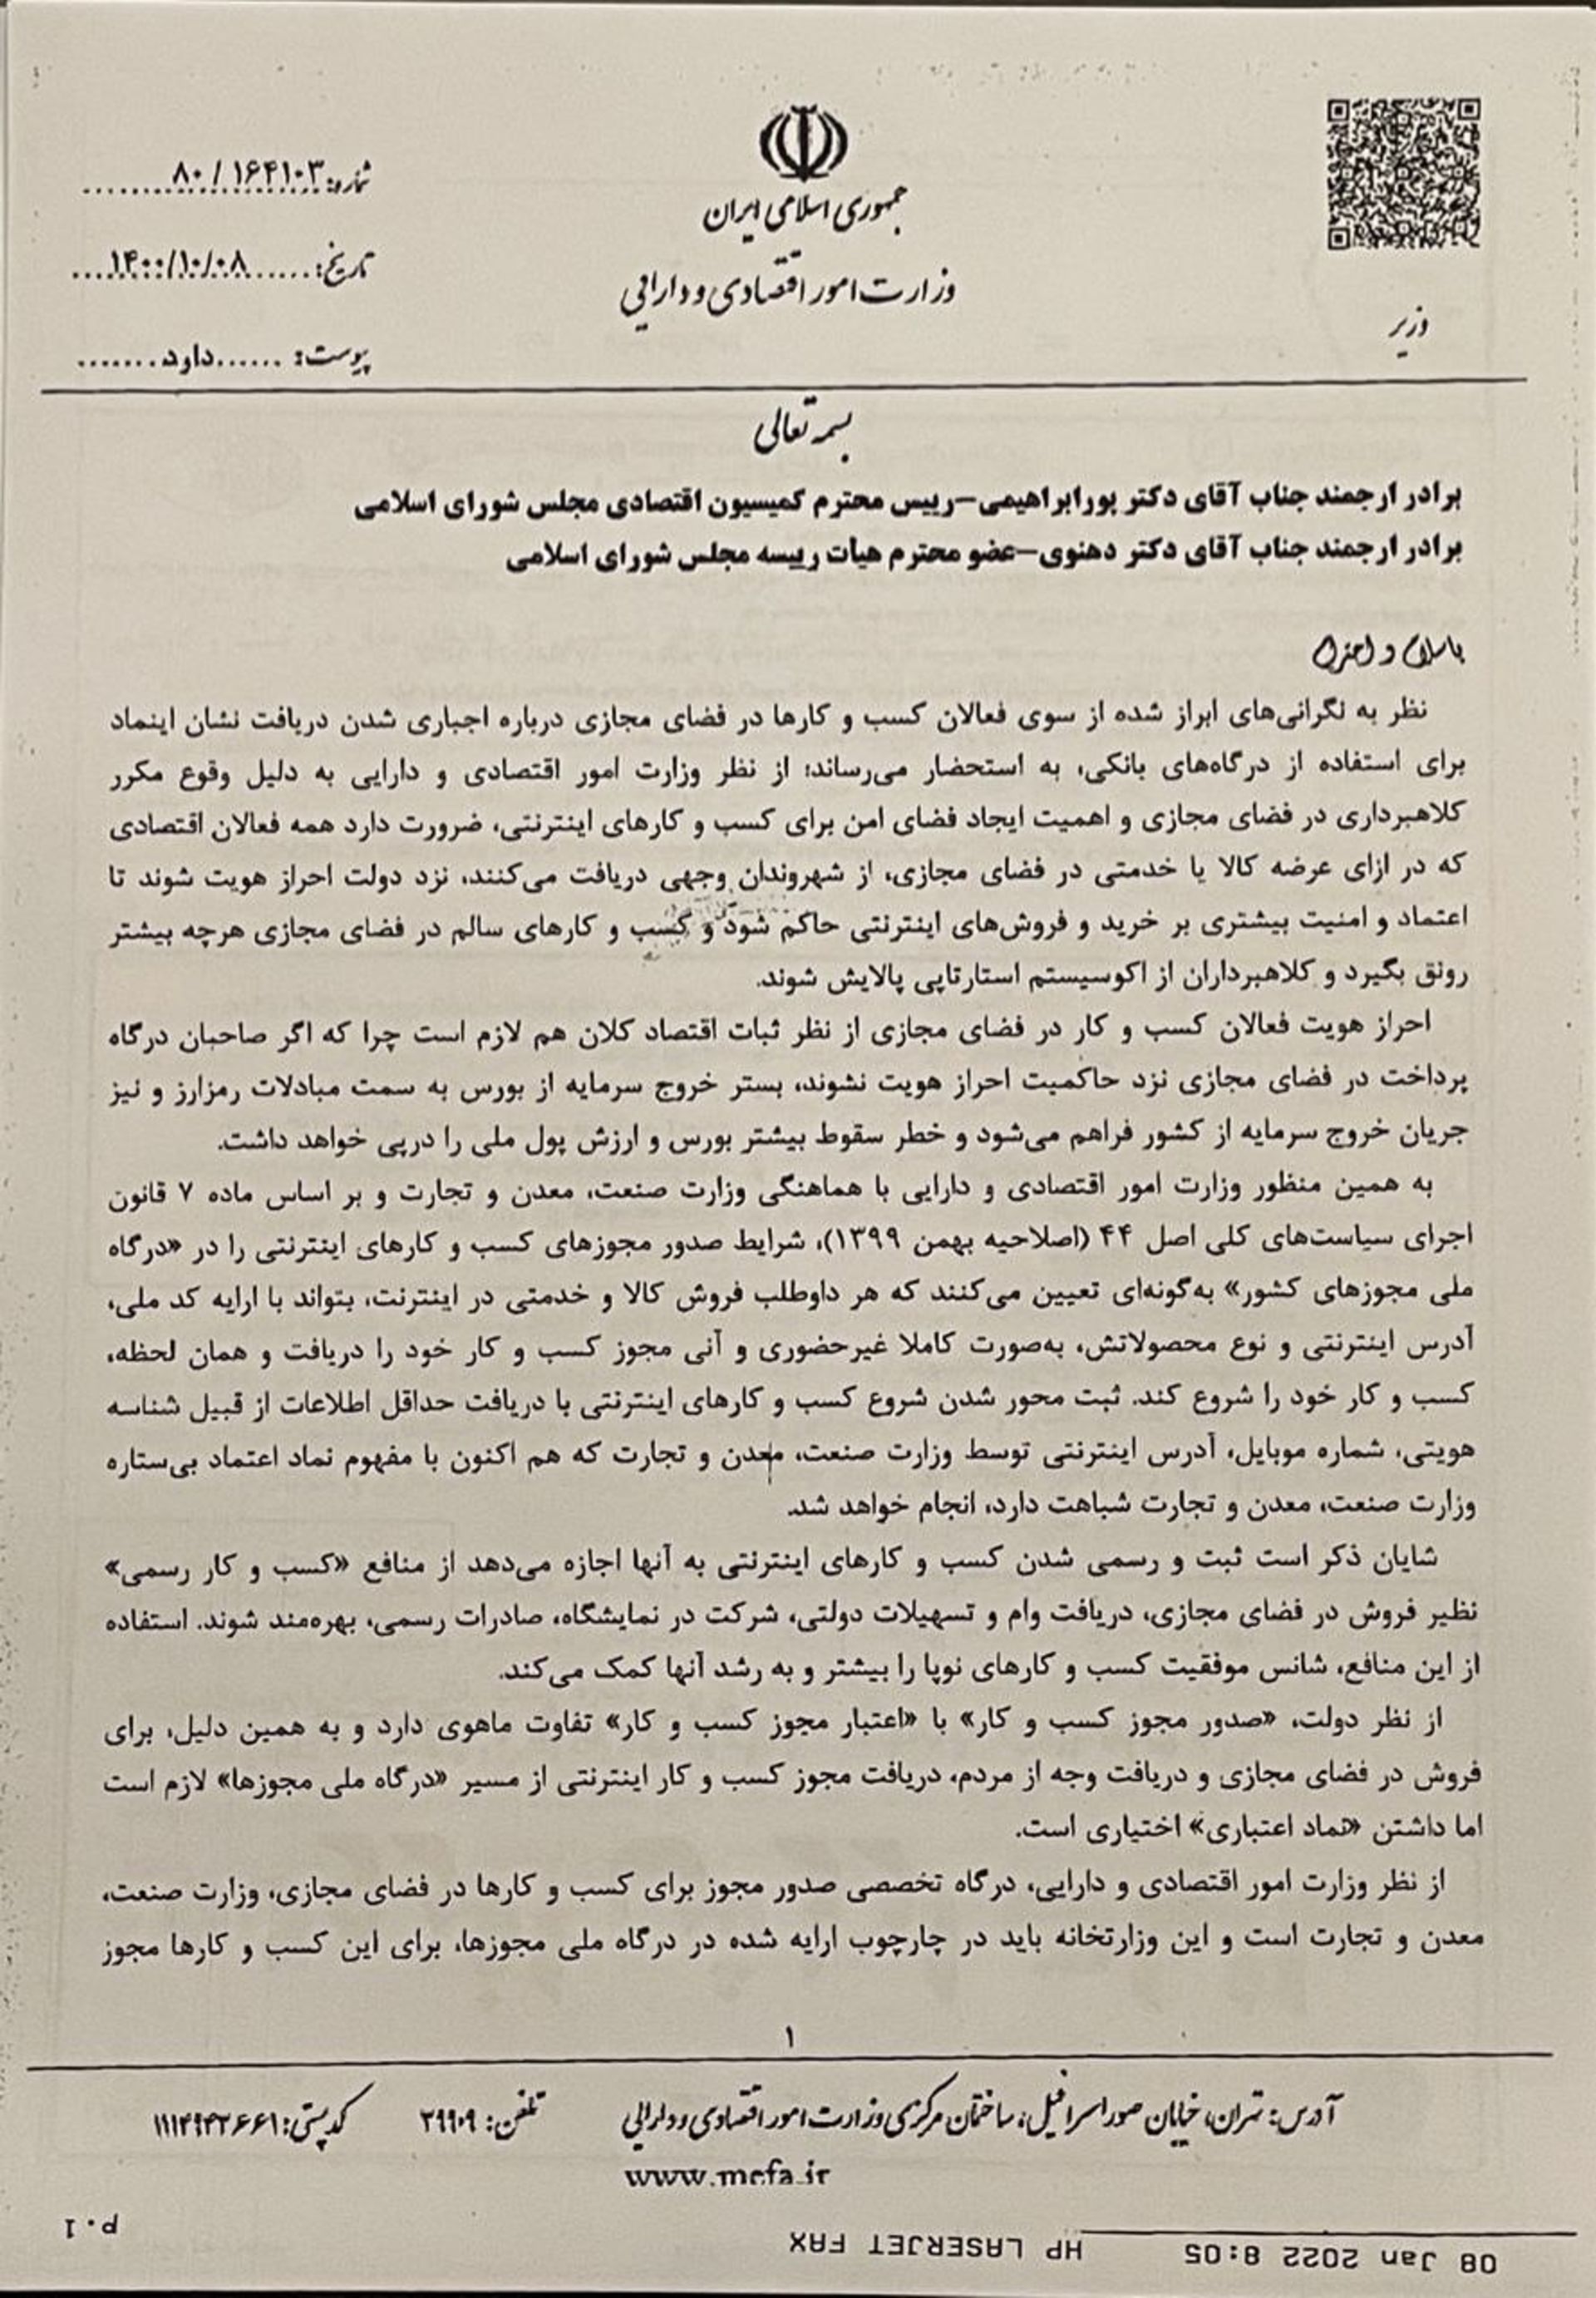 صفحه دوم نامه وزیر اقتصاد به مجلس درمورد الزام اینماد